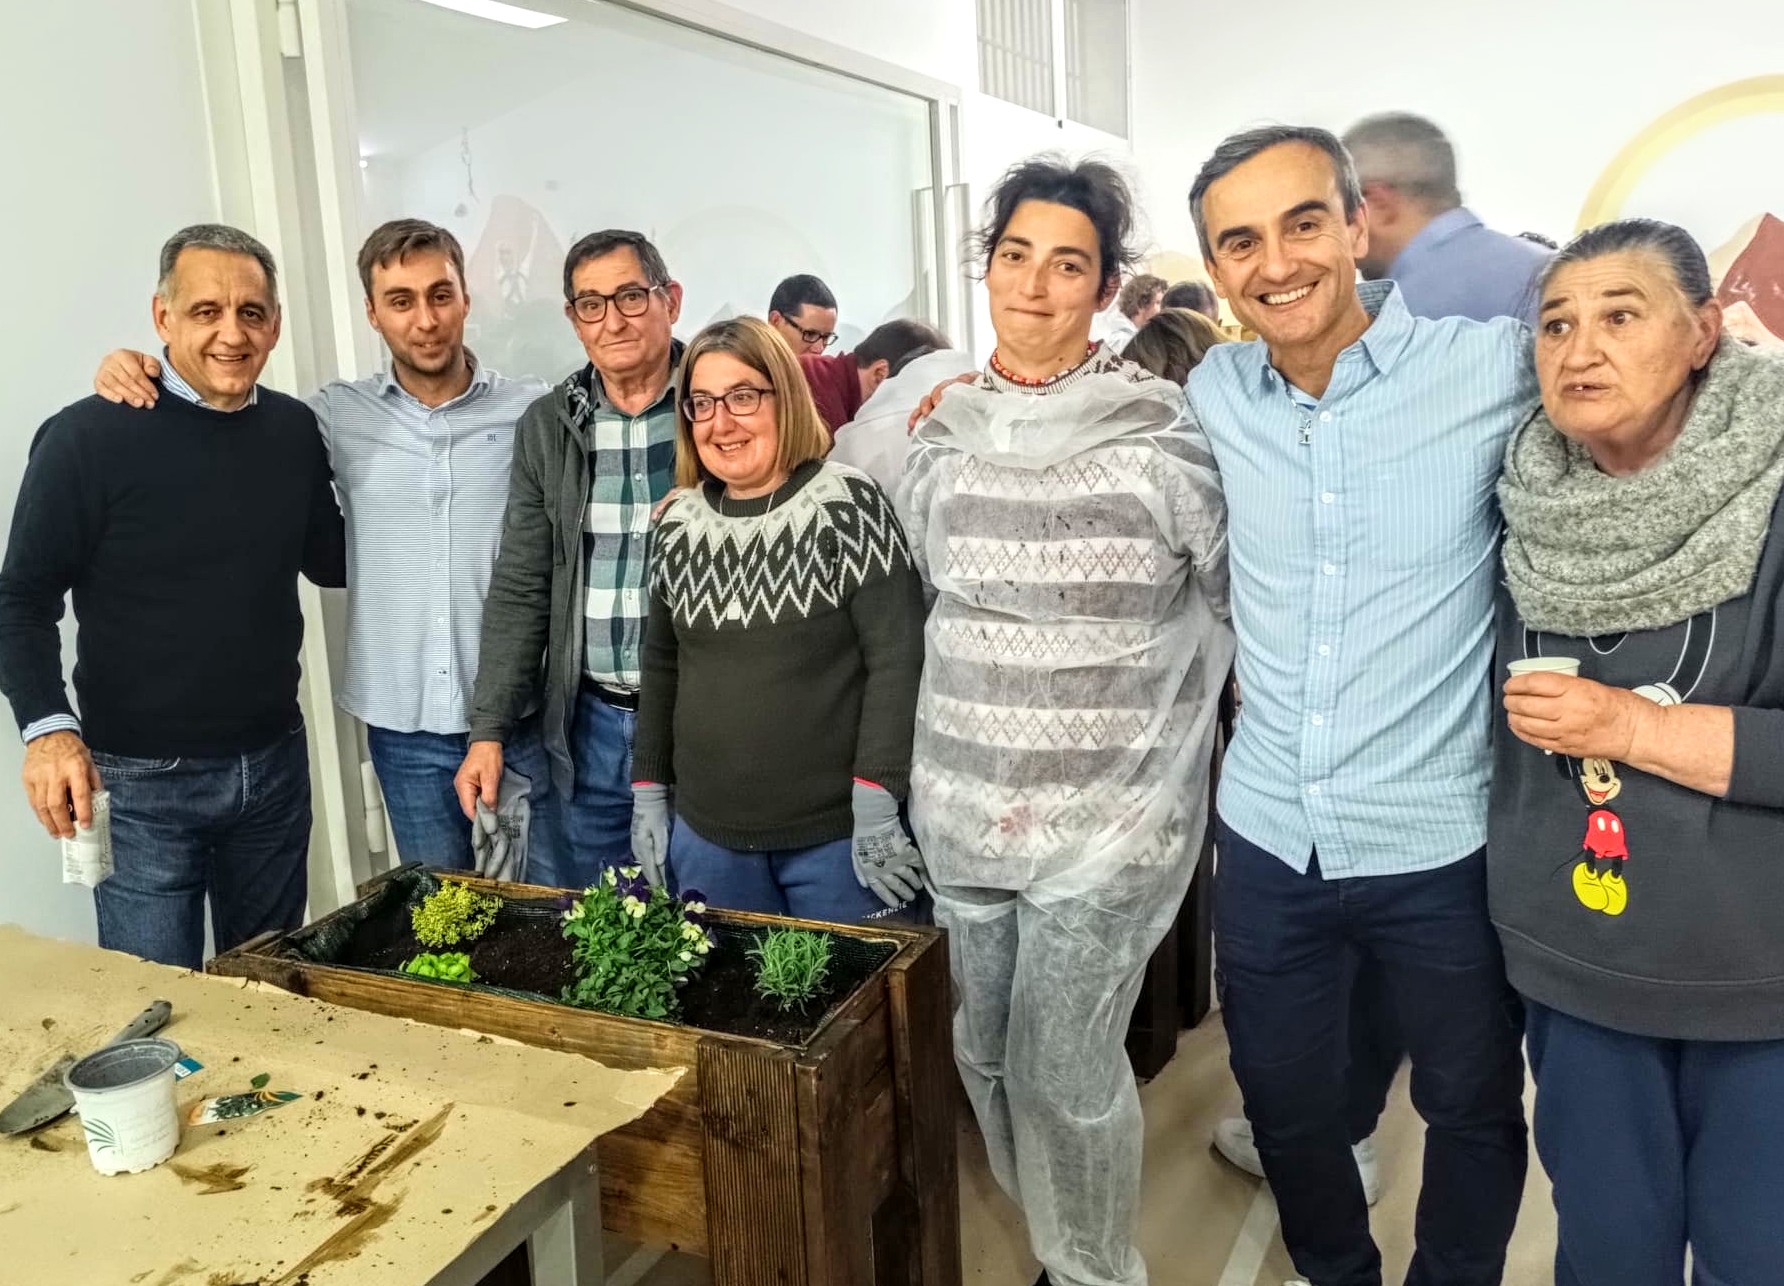  Ejecutivos de Sanitas realizan una jornada de voluntariado en Fundación AFIM en Valencia